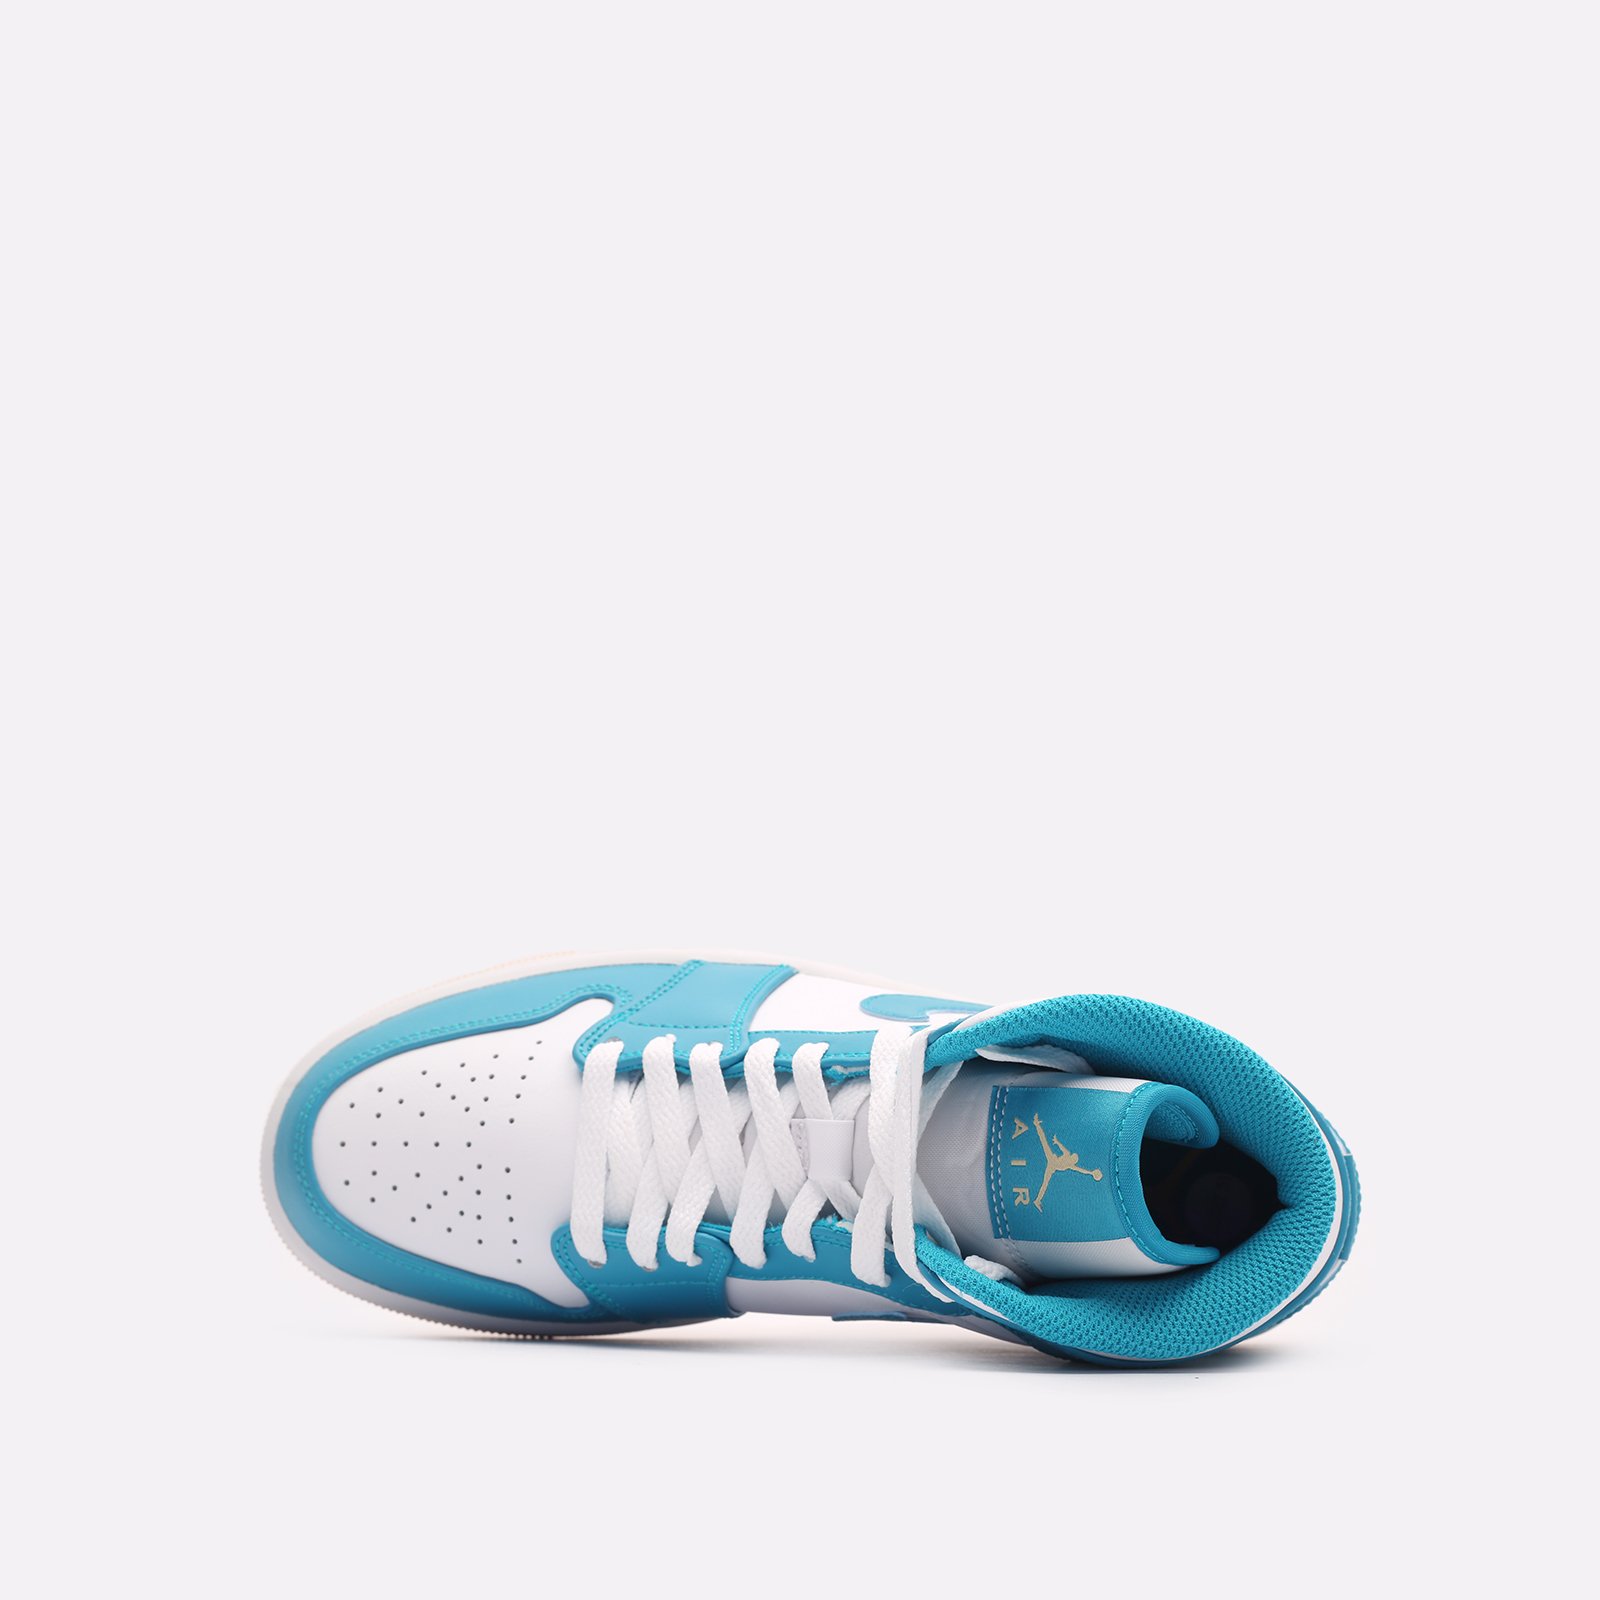 мужские кроссовки Jordan 1 Mid  (DQ8426-400)  - цена, описание, фото 6